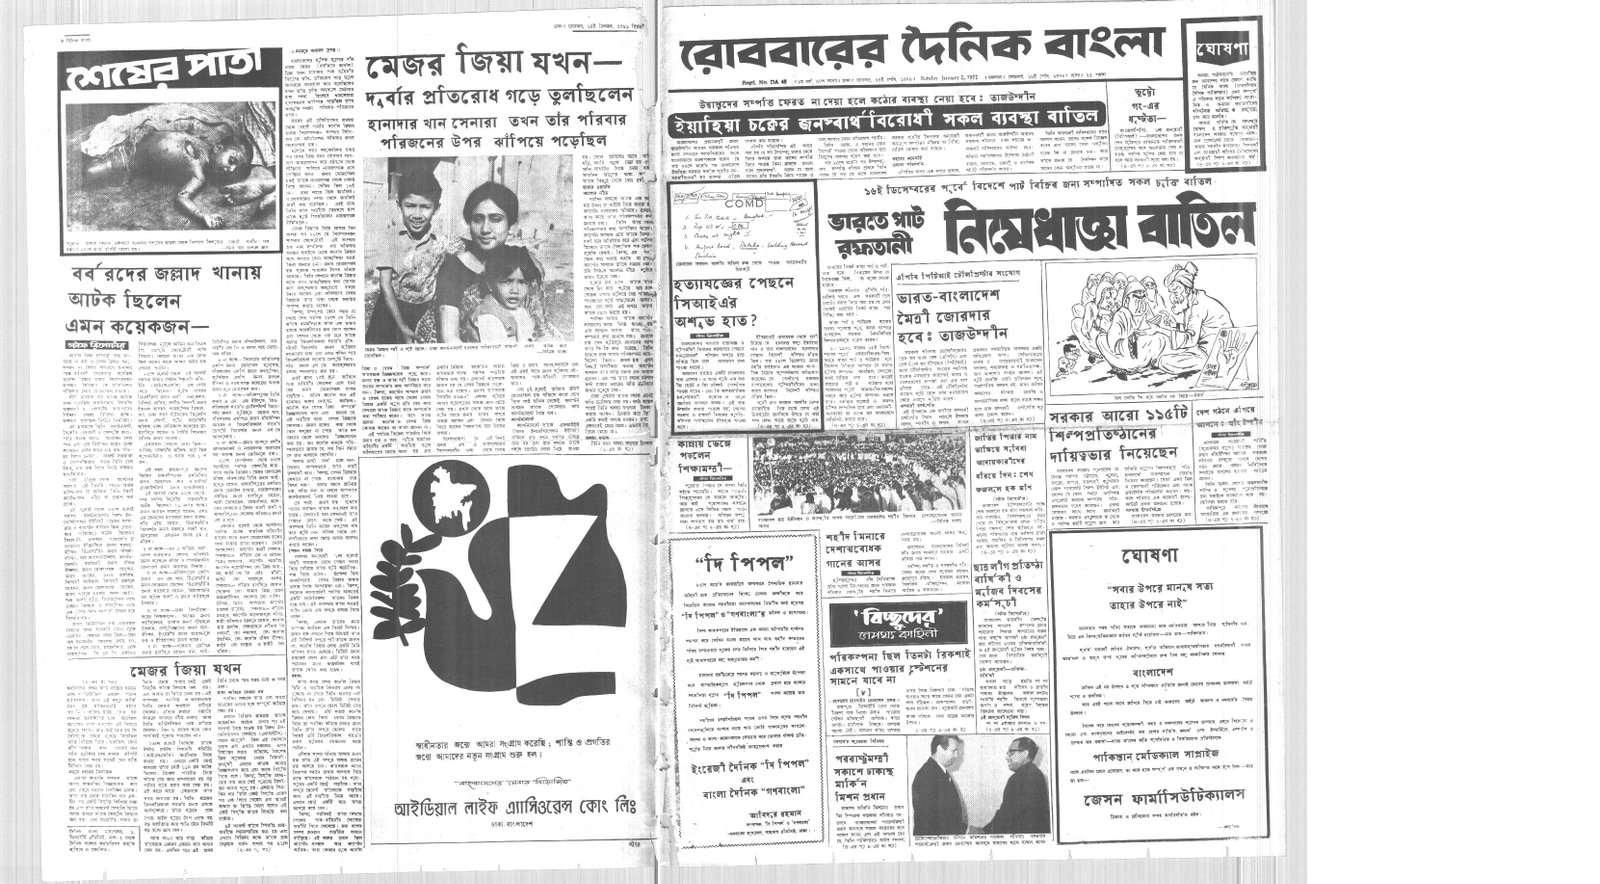 2JAN1972-DAINIK BANGLA-Regular-Page 1 and 6